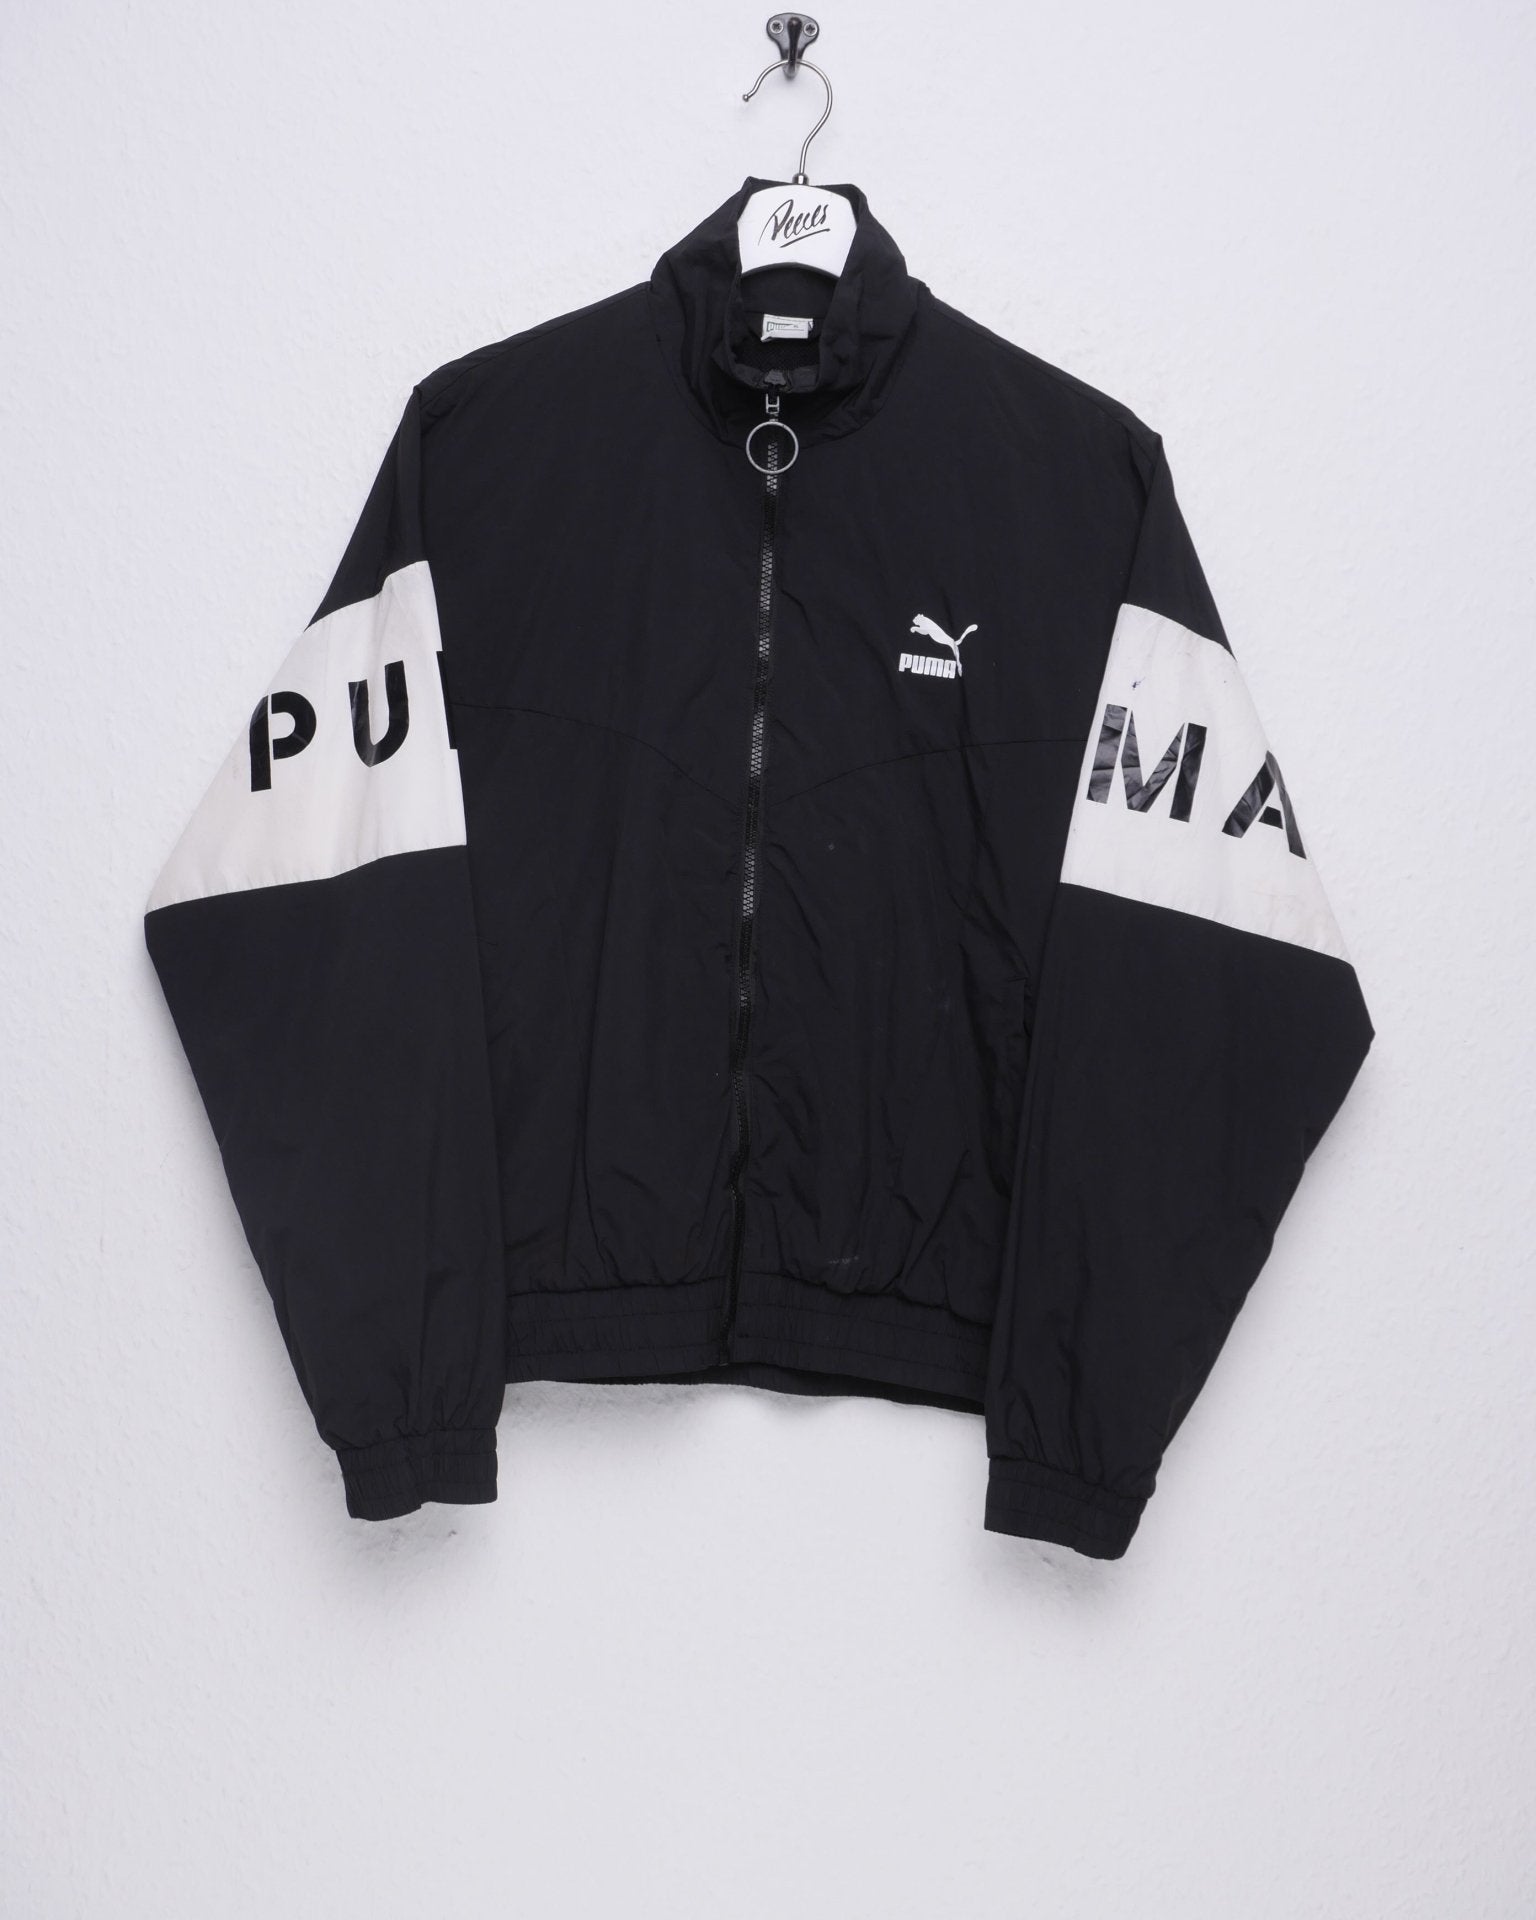 Puma printed Logo Vintage Track Jacke - Peeces